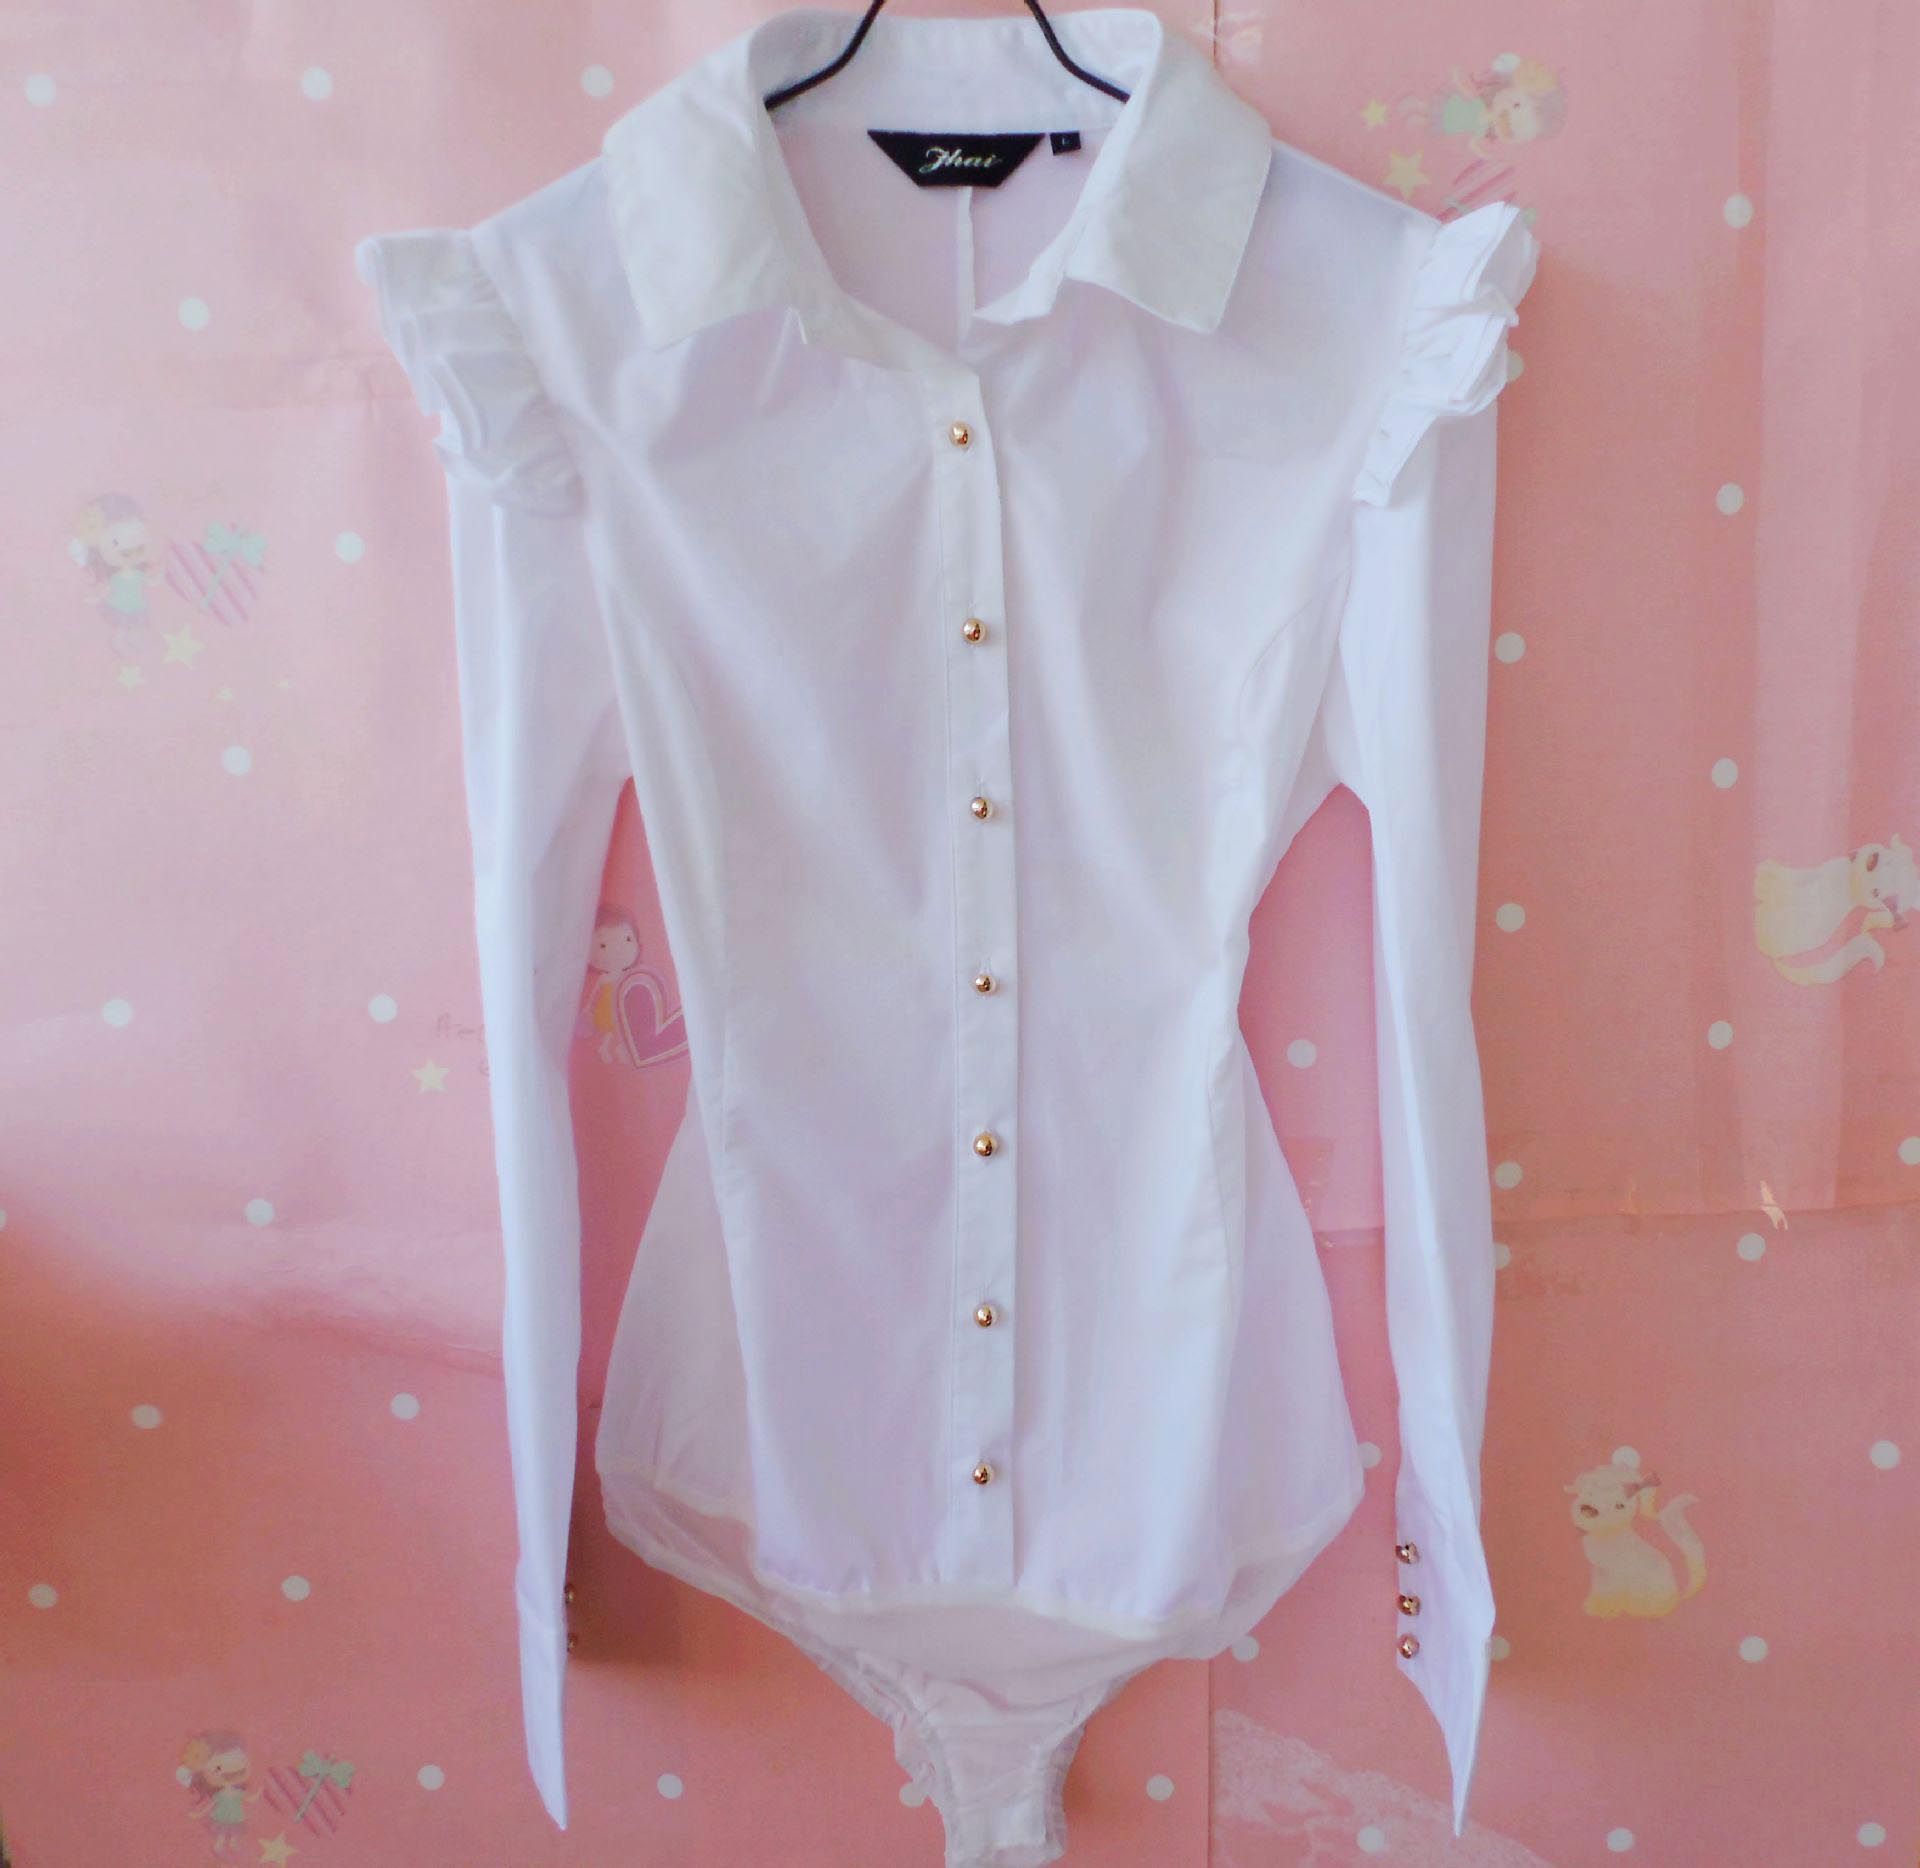 Las mujeres de la camisa blanca Body manga OL delgado botón camisas Tops ropa